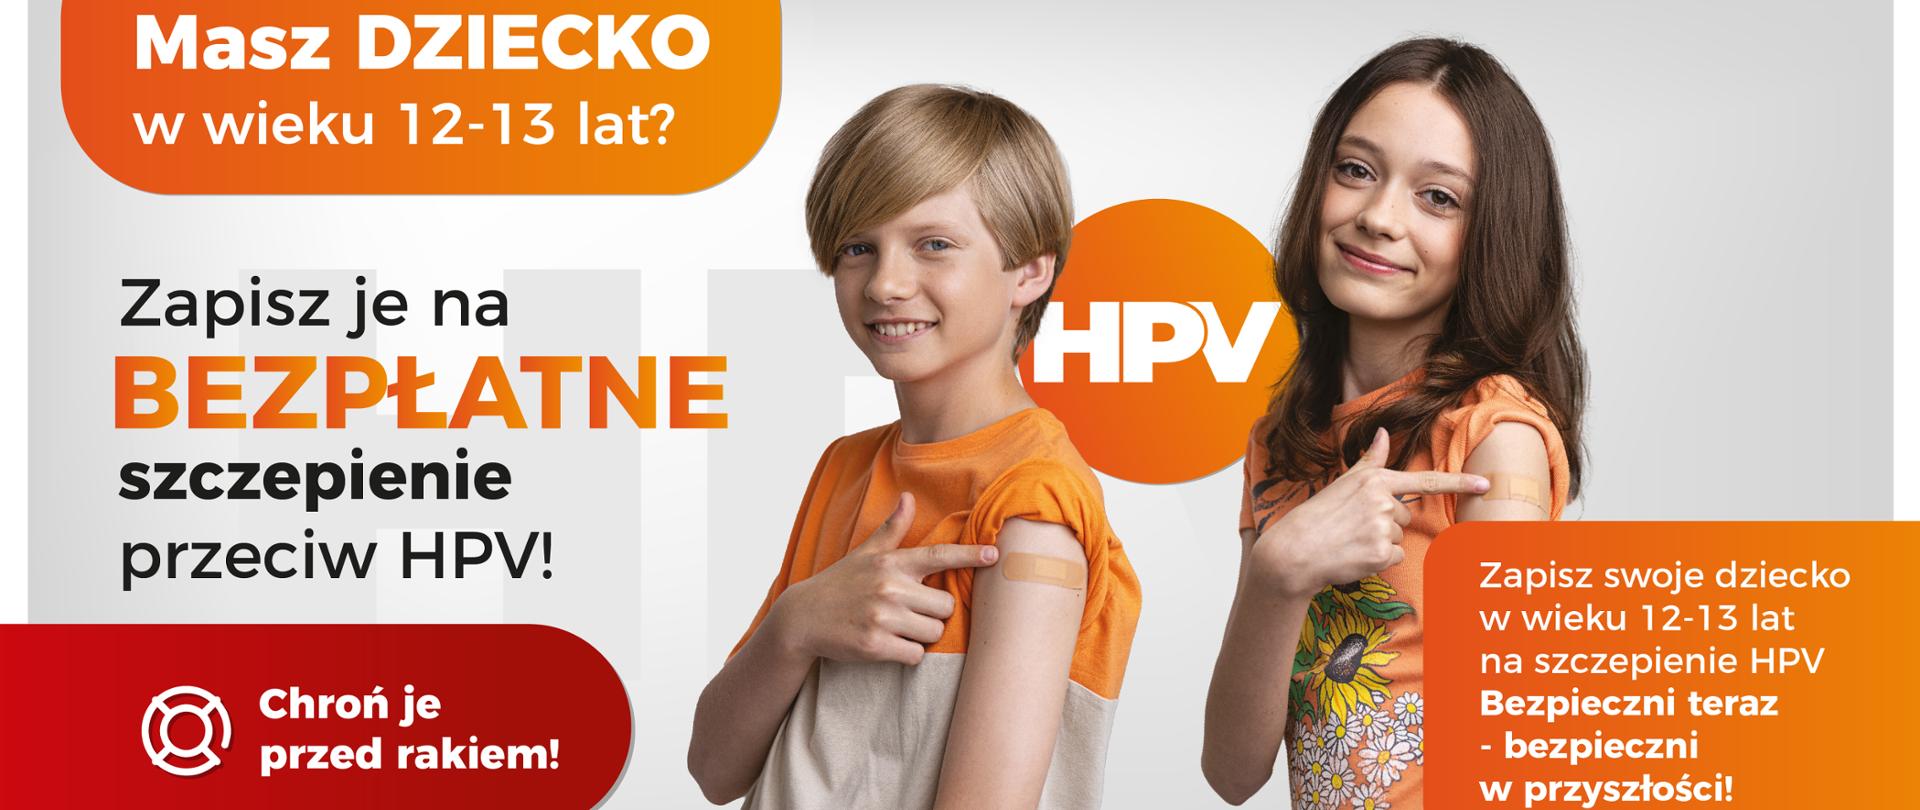 Baner promujący bezpłatne szczepienia przeciw HPV